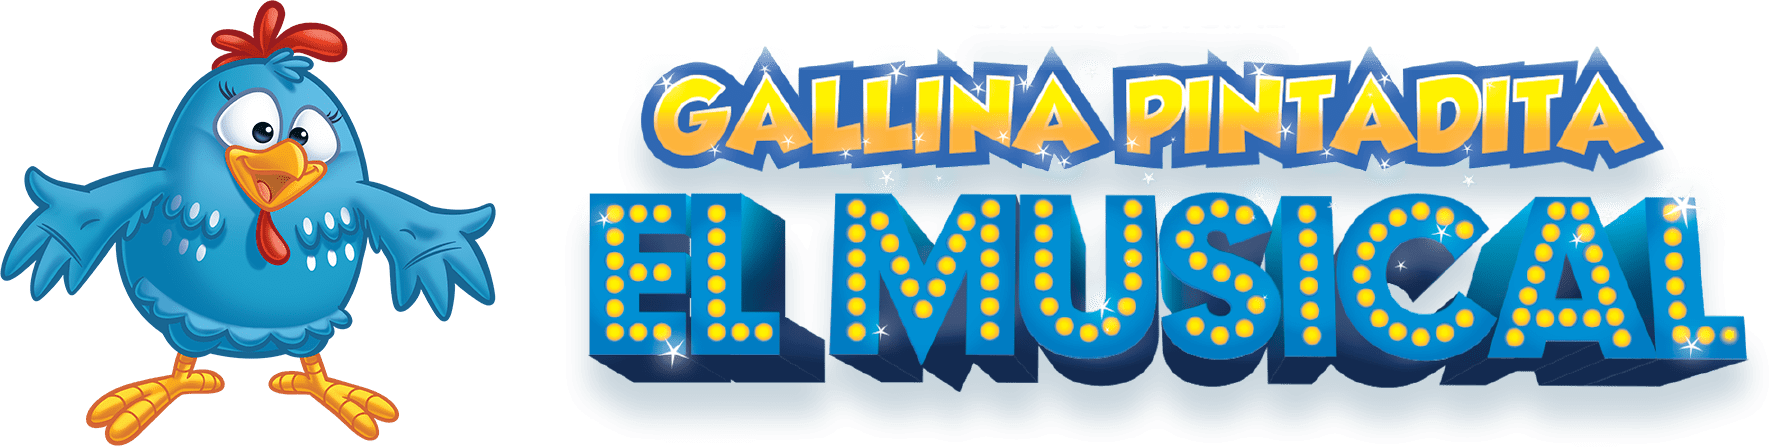 Gallina Pintadita: El Musical - Agenda do Show Oficial da Galinha Pintadinha